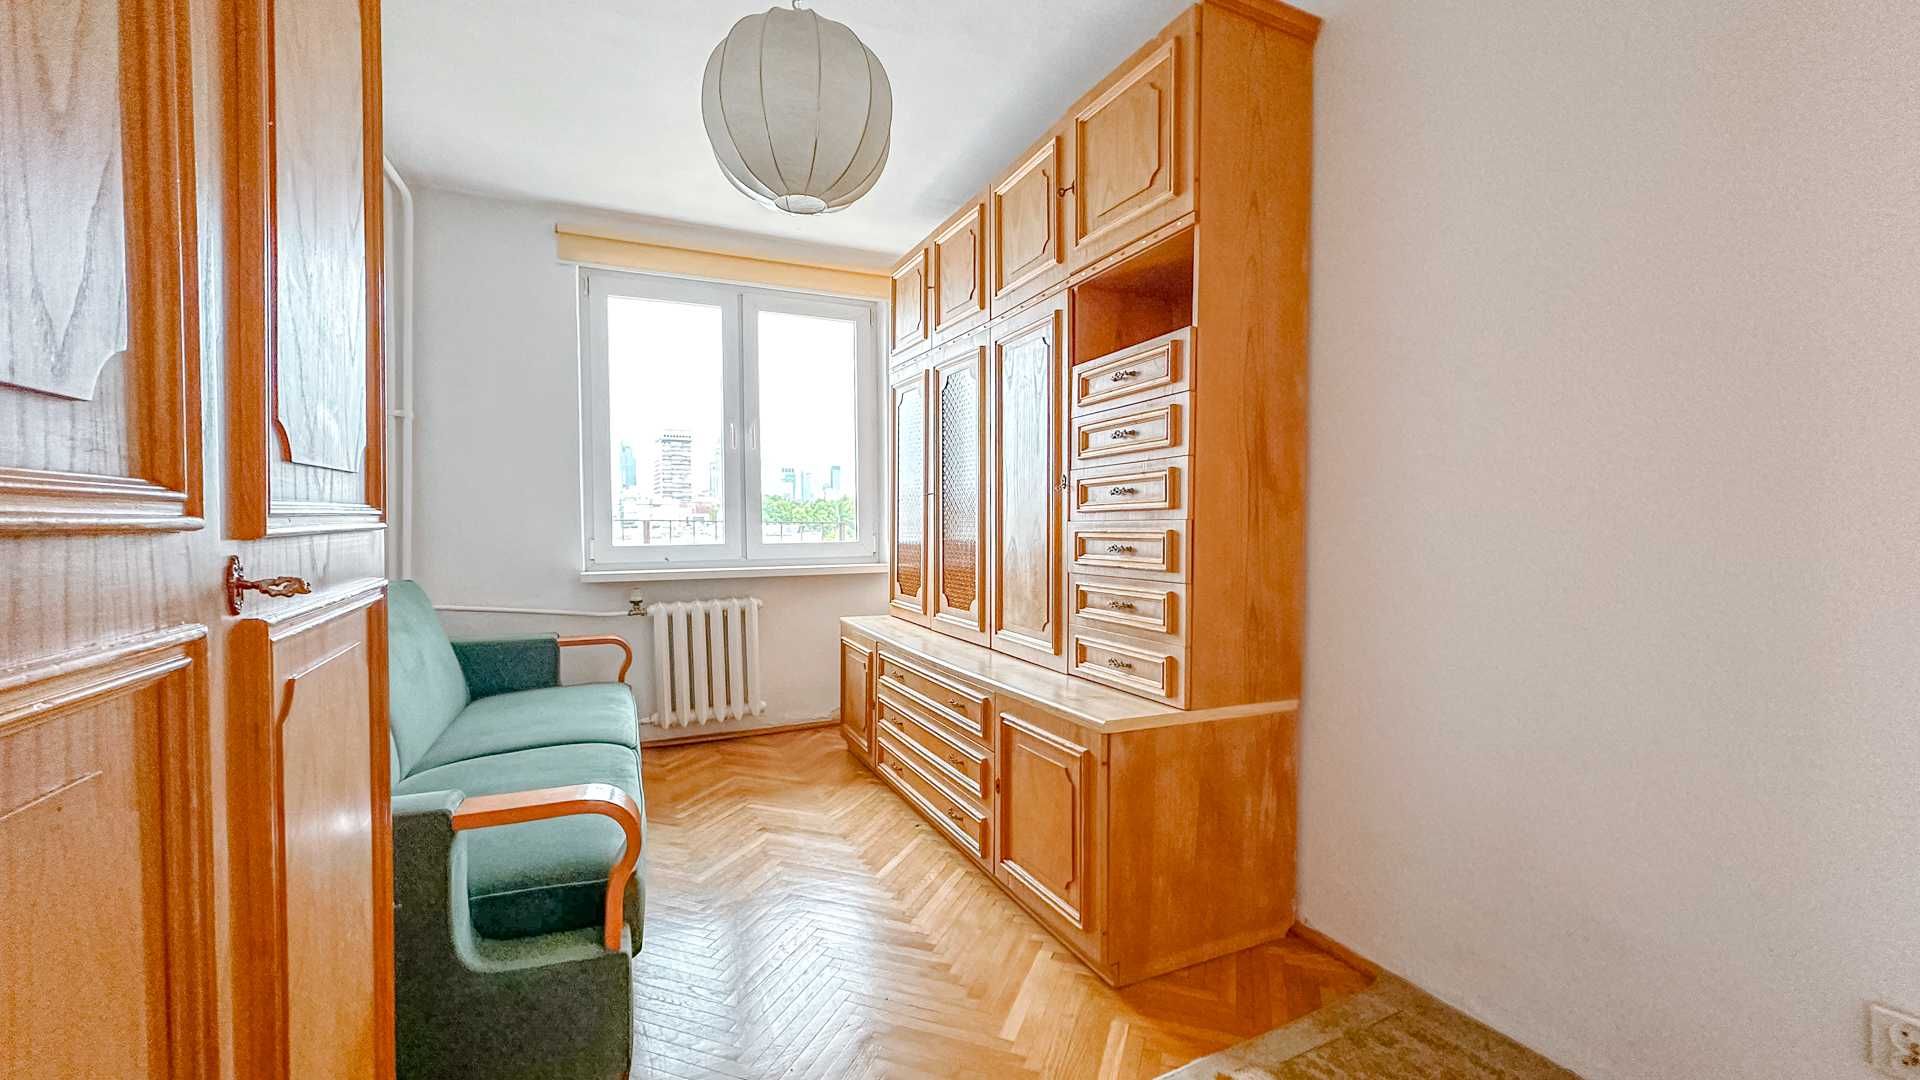 Dwupokojowe mieszkanie na Śródmieściu/Tworoom apartment in Śródmieście